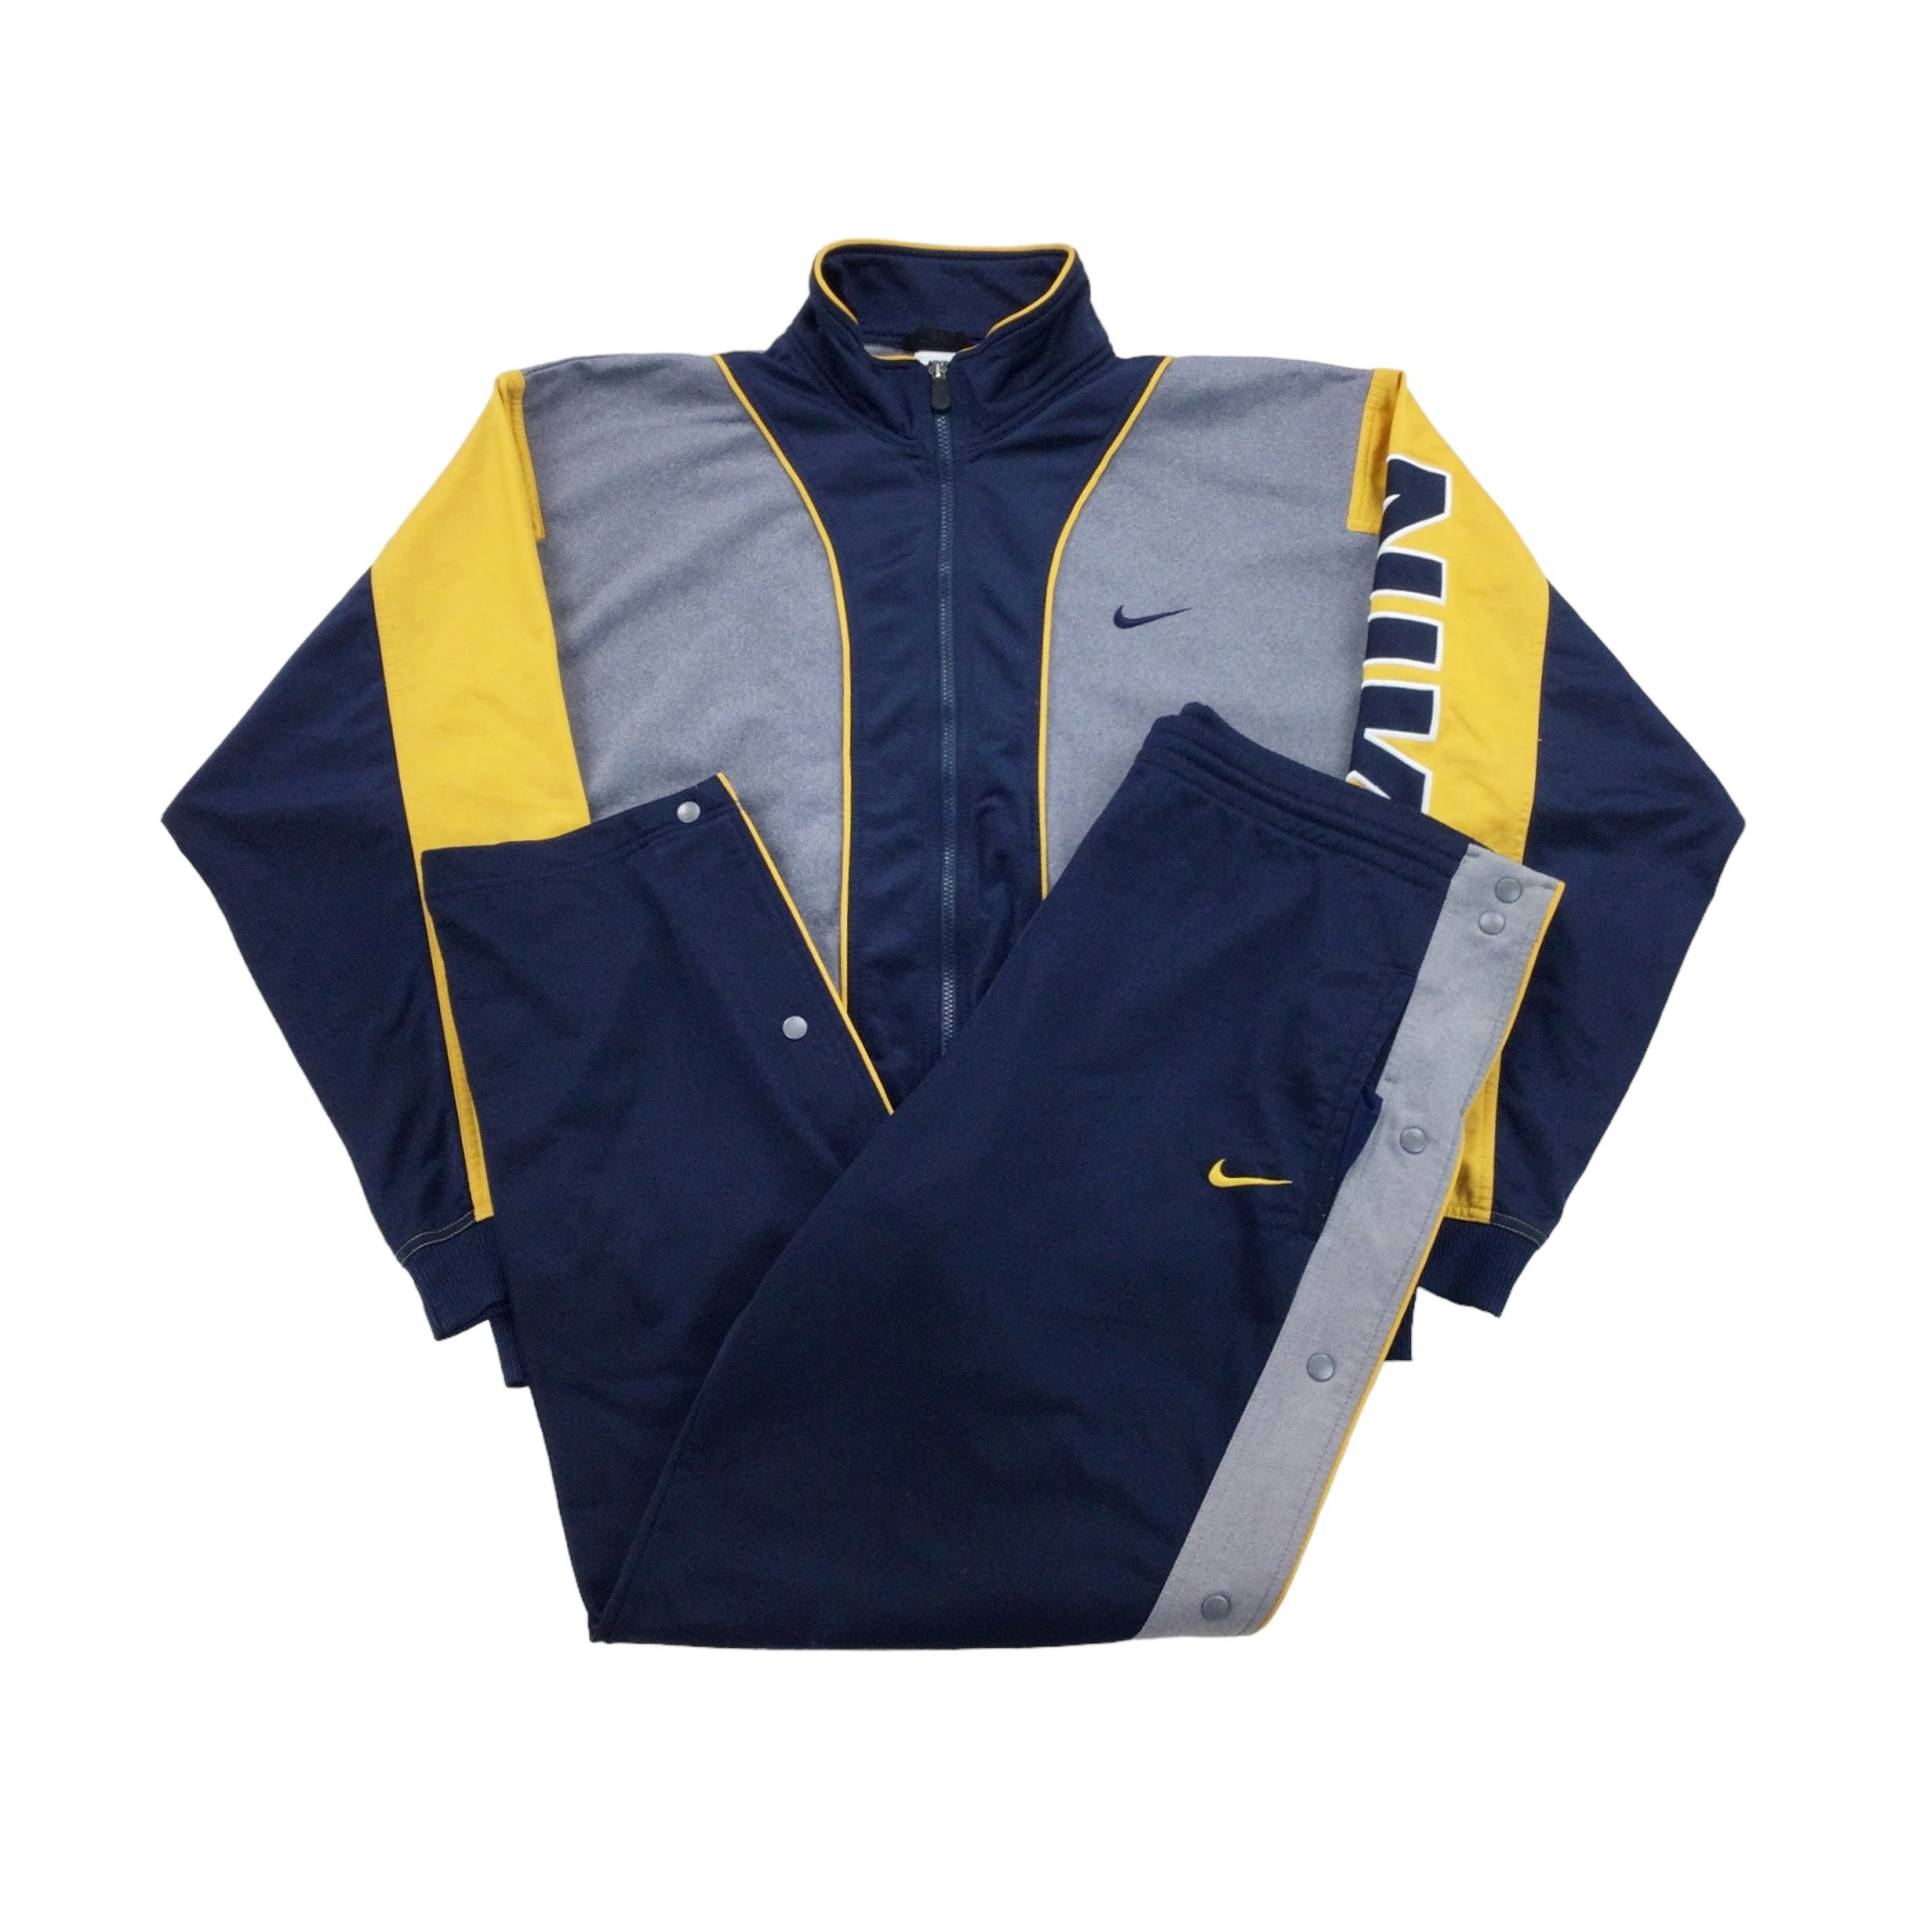 Vintage Nike 90S Swoosh Trainingsanzug - Xl Größe Herren Sport Anzug Gebraucht von aloisstudio